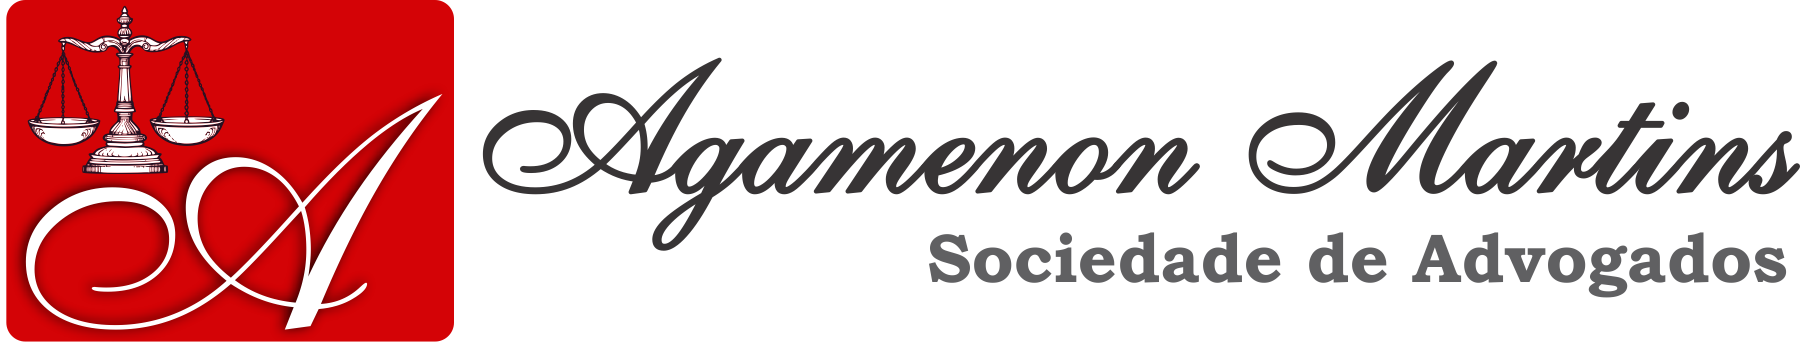 Logo3_Agamenon